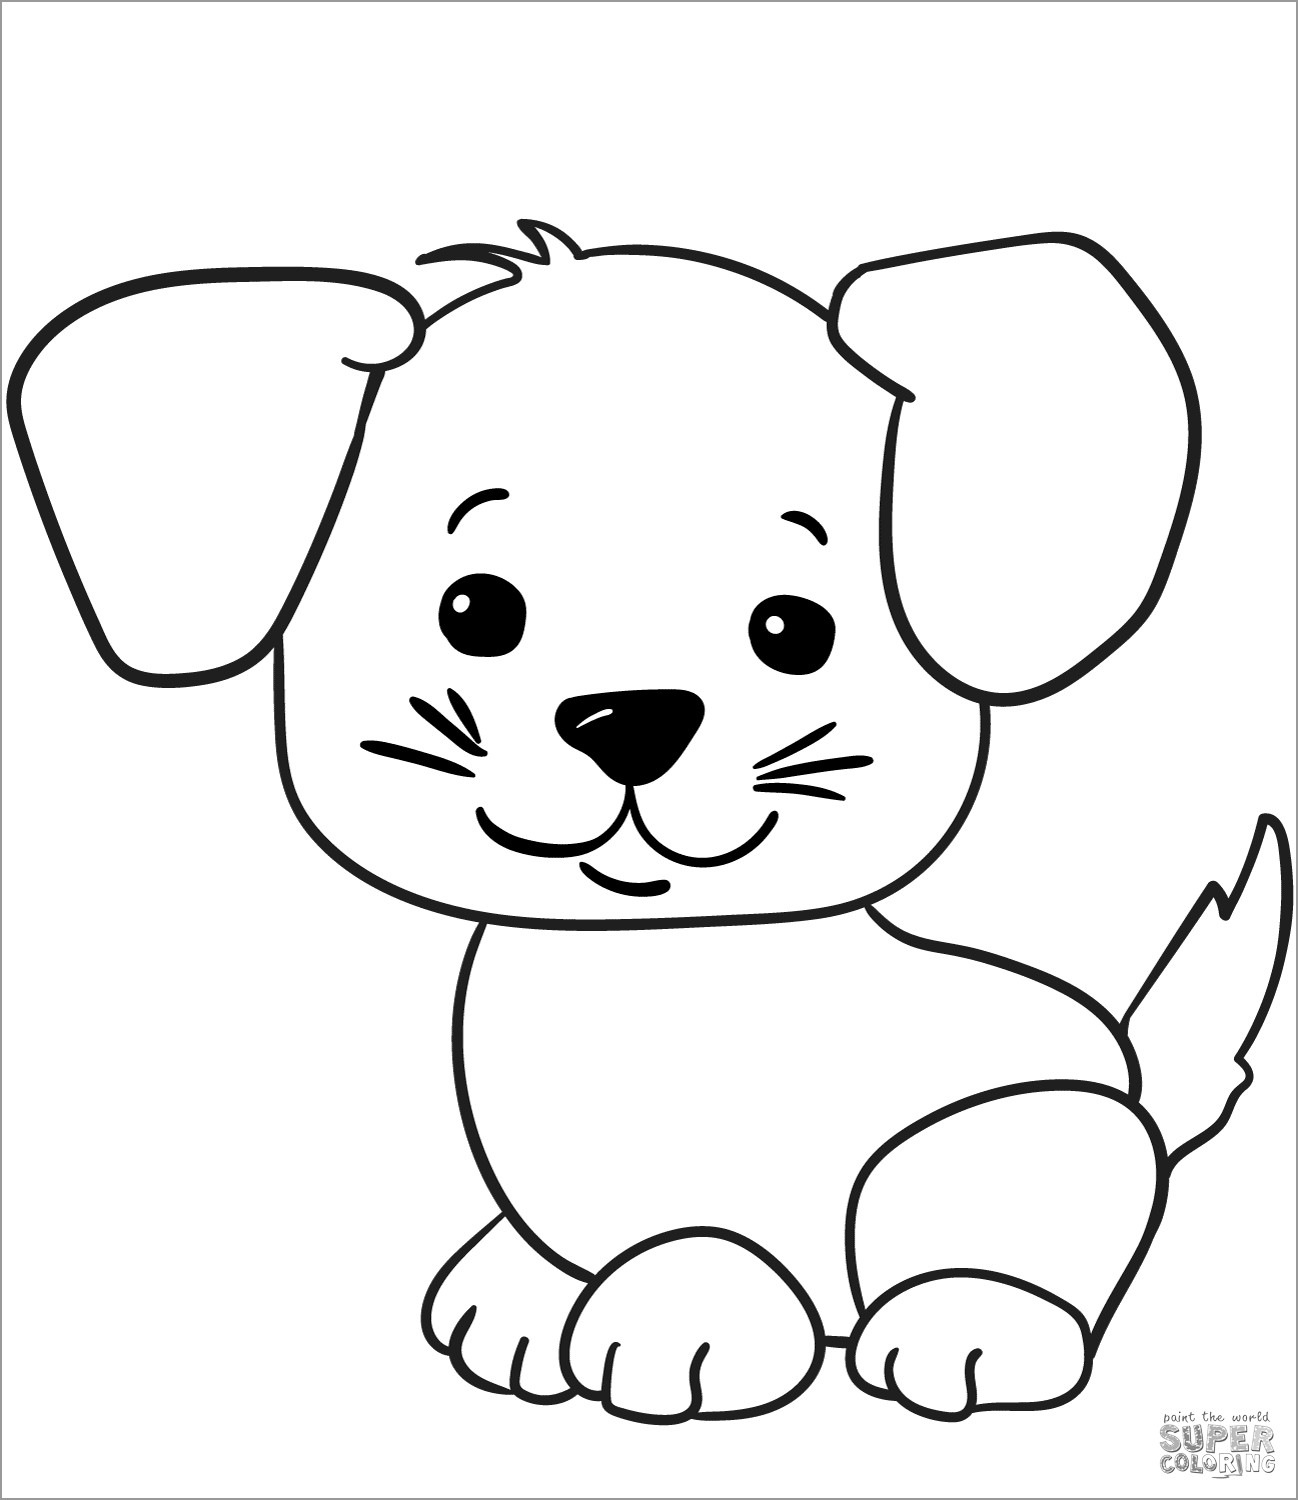 Easy Cute Cartoon Puppy Coloring Page